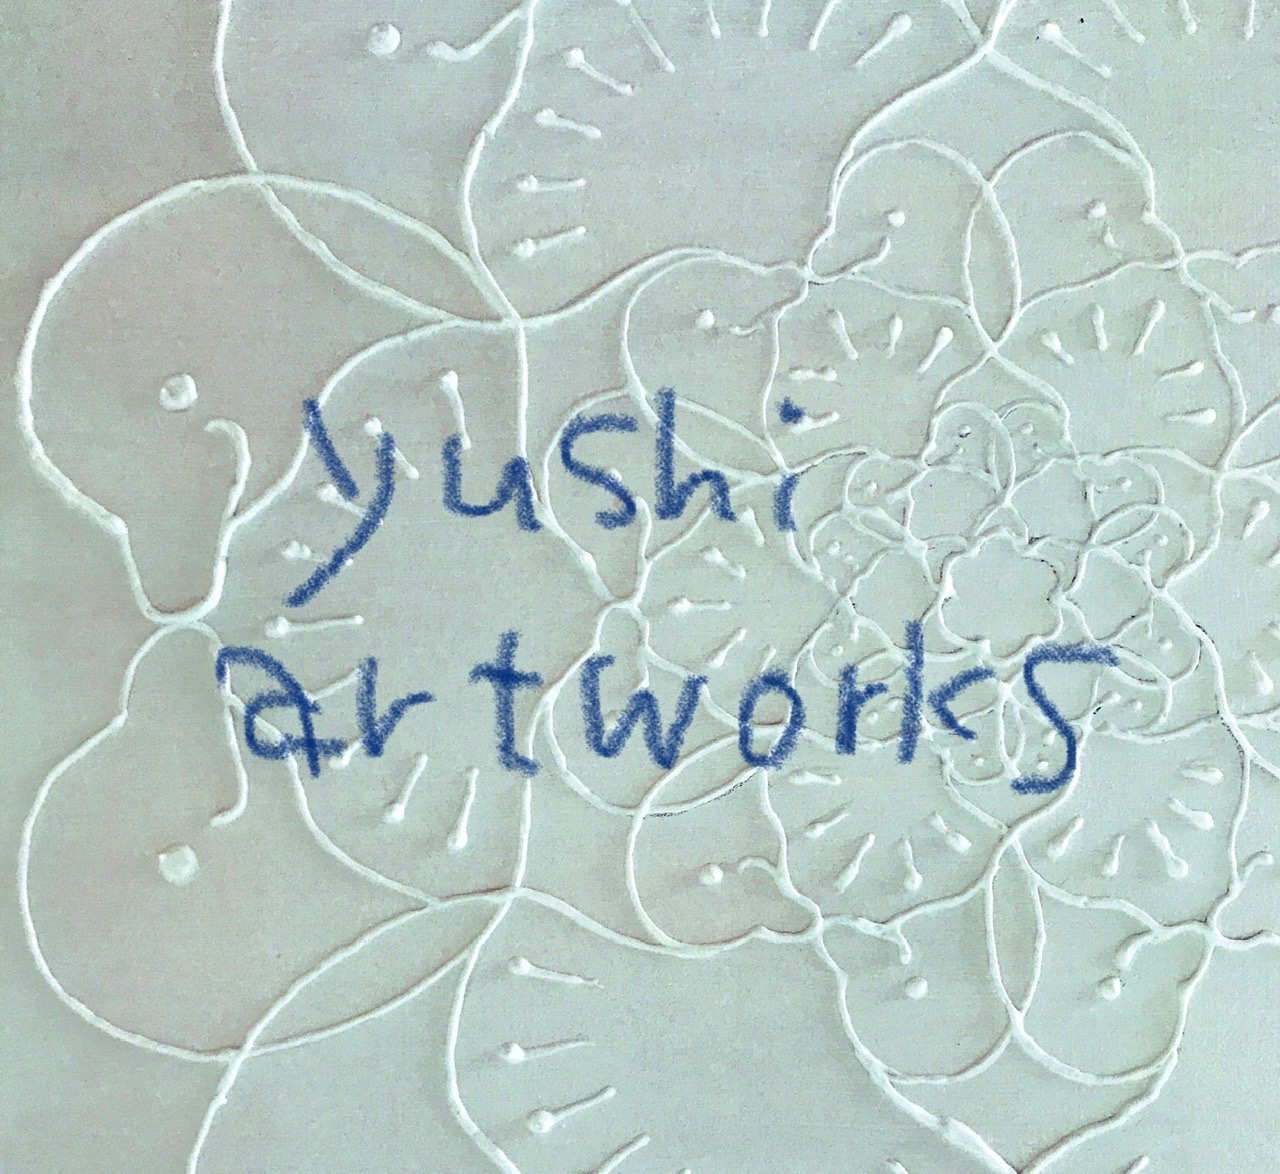 yushi artworks